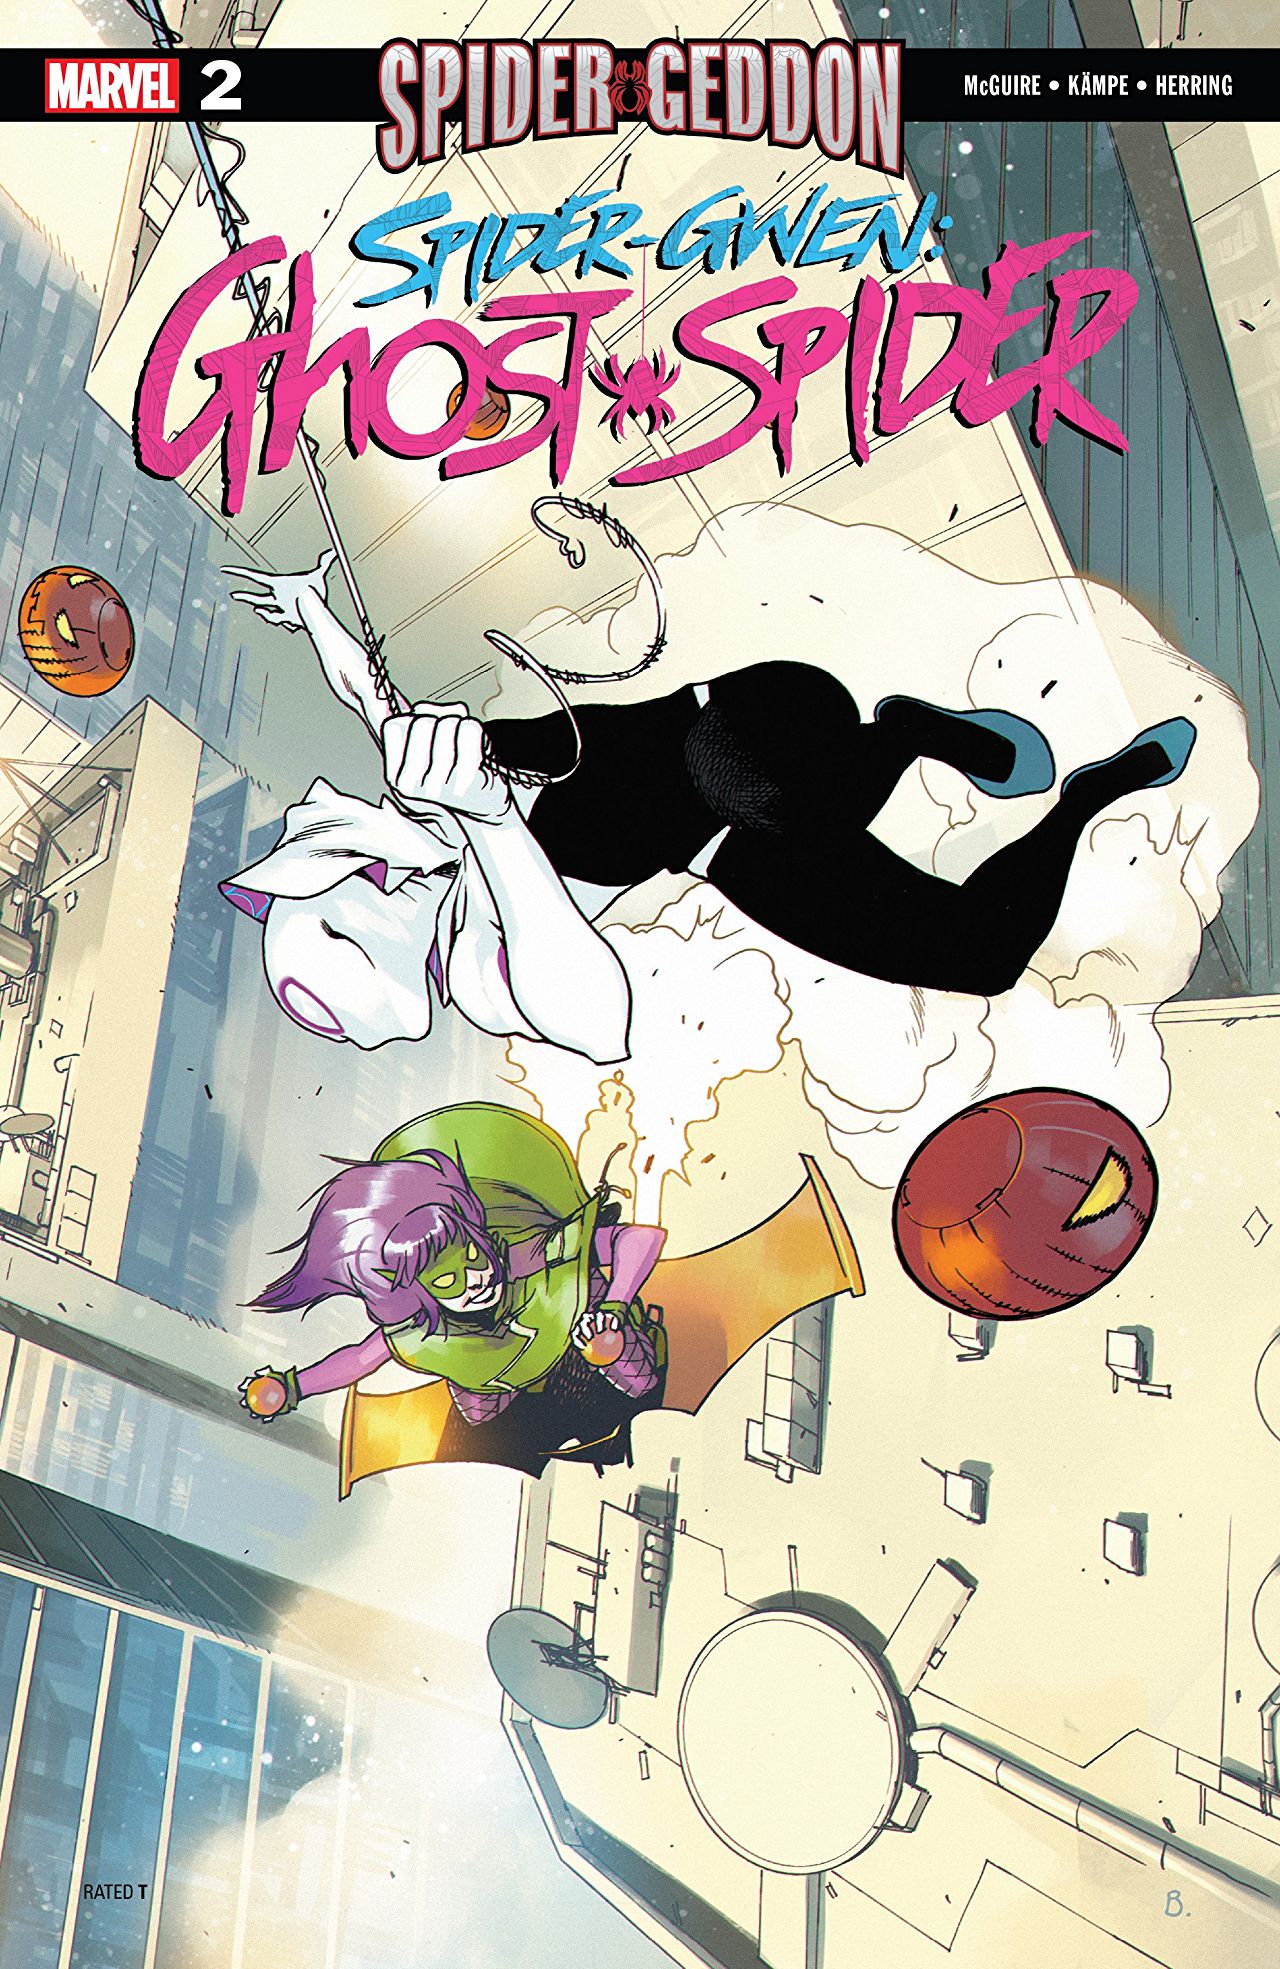 Spider-Gwen: Ghost Spider #2 Review